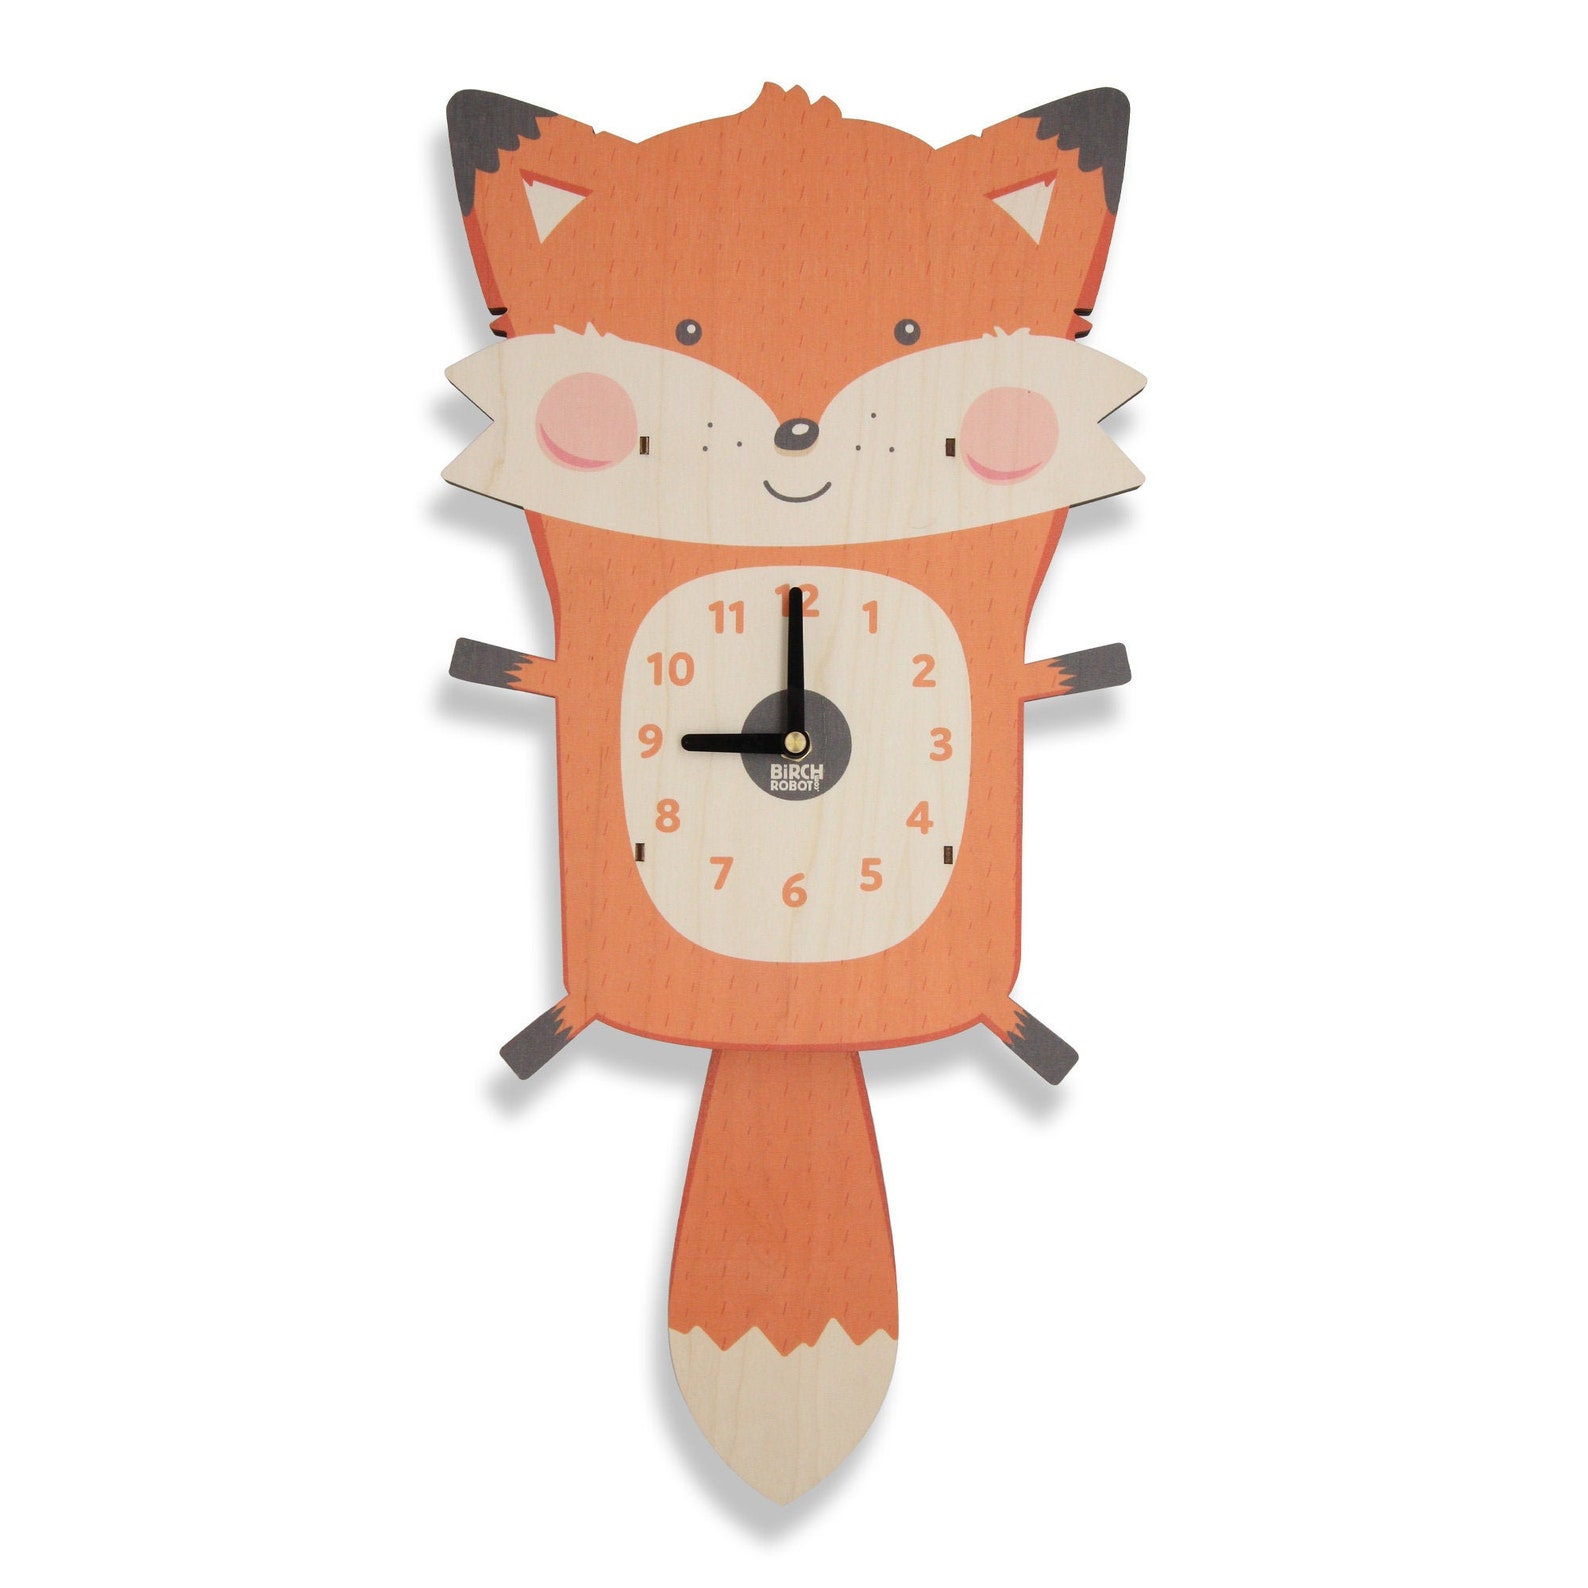 Часы foxes. Часы настенные с лисами. Электронные часы с лисой. Funny Clocks for Kids.